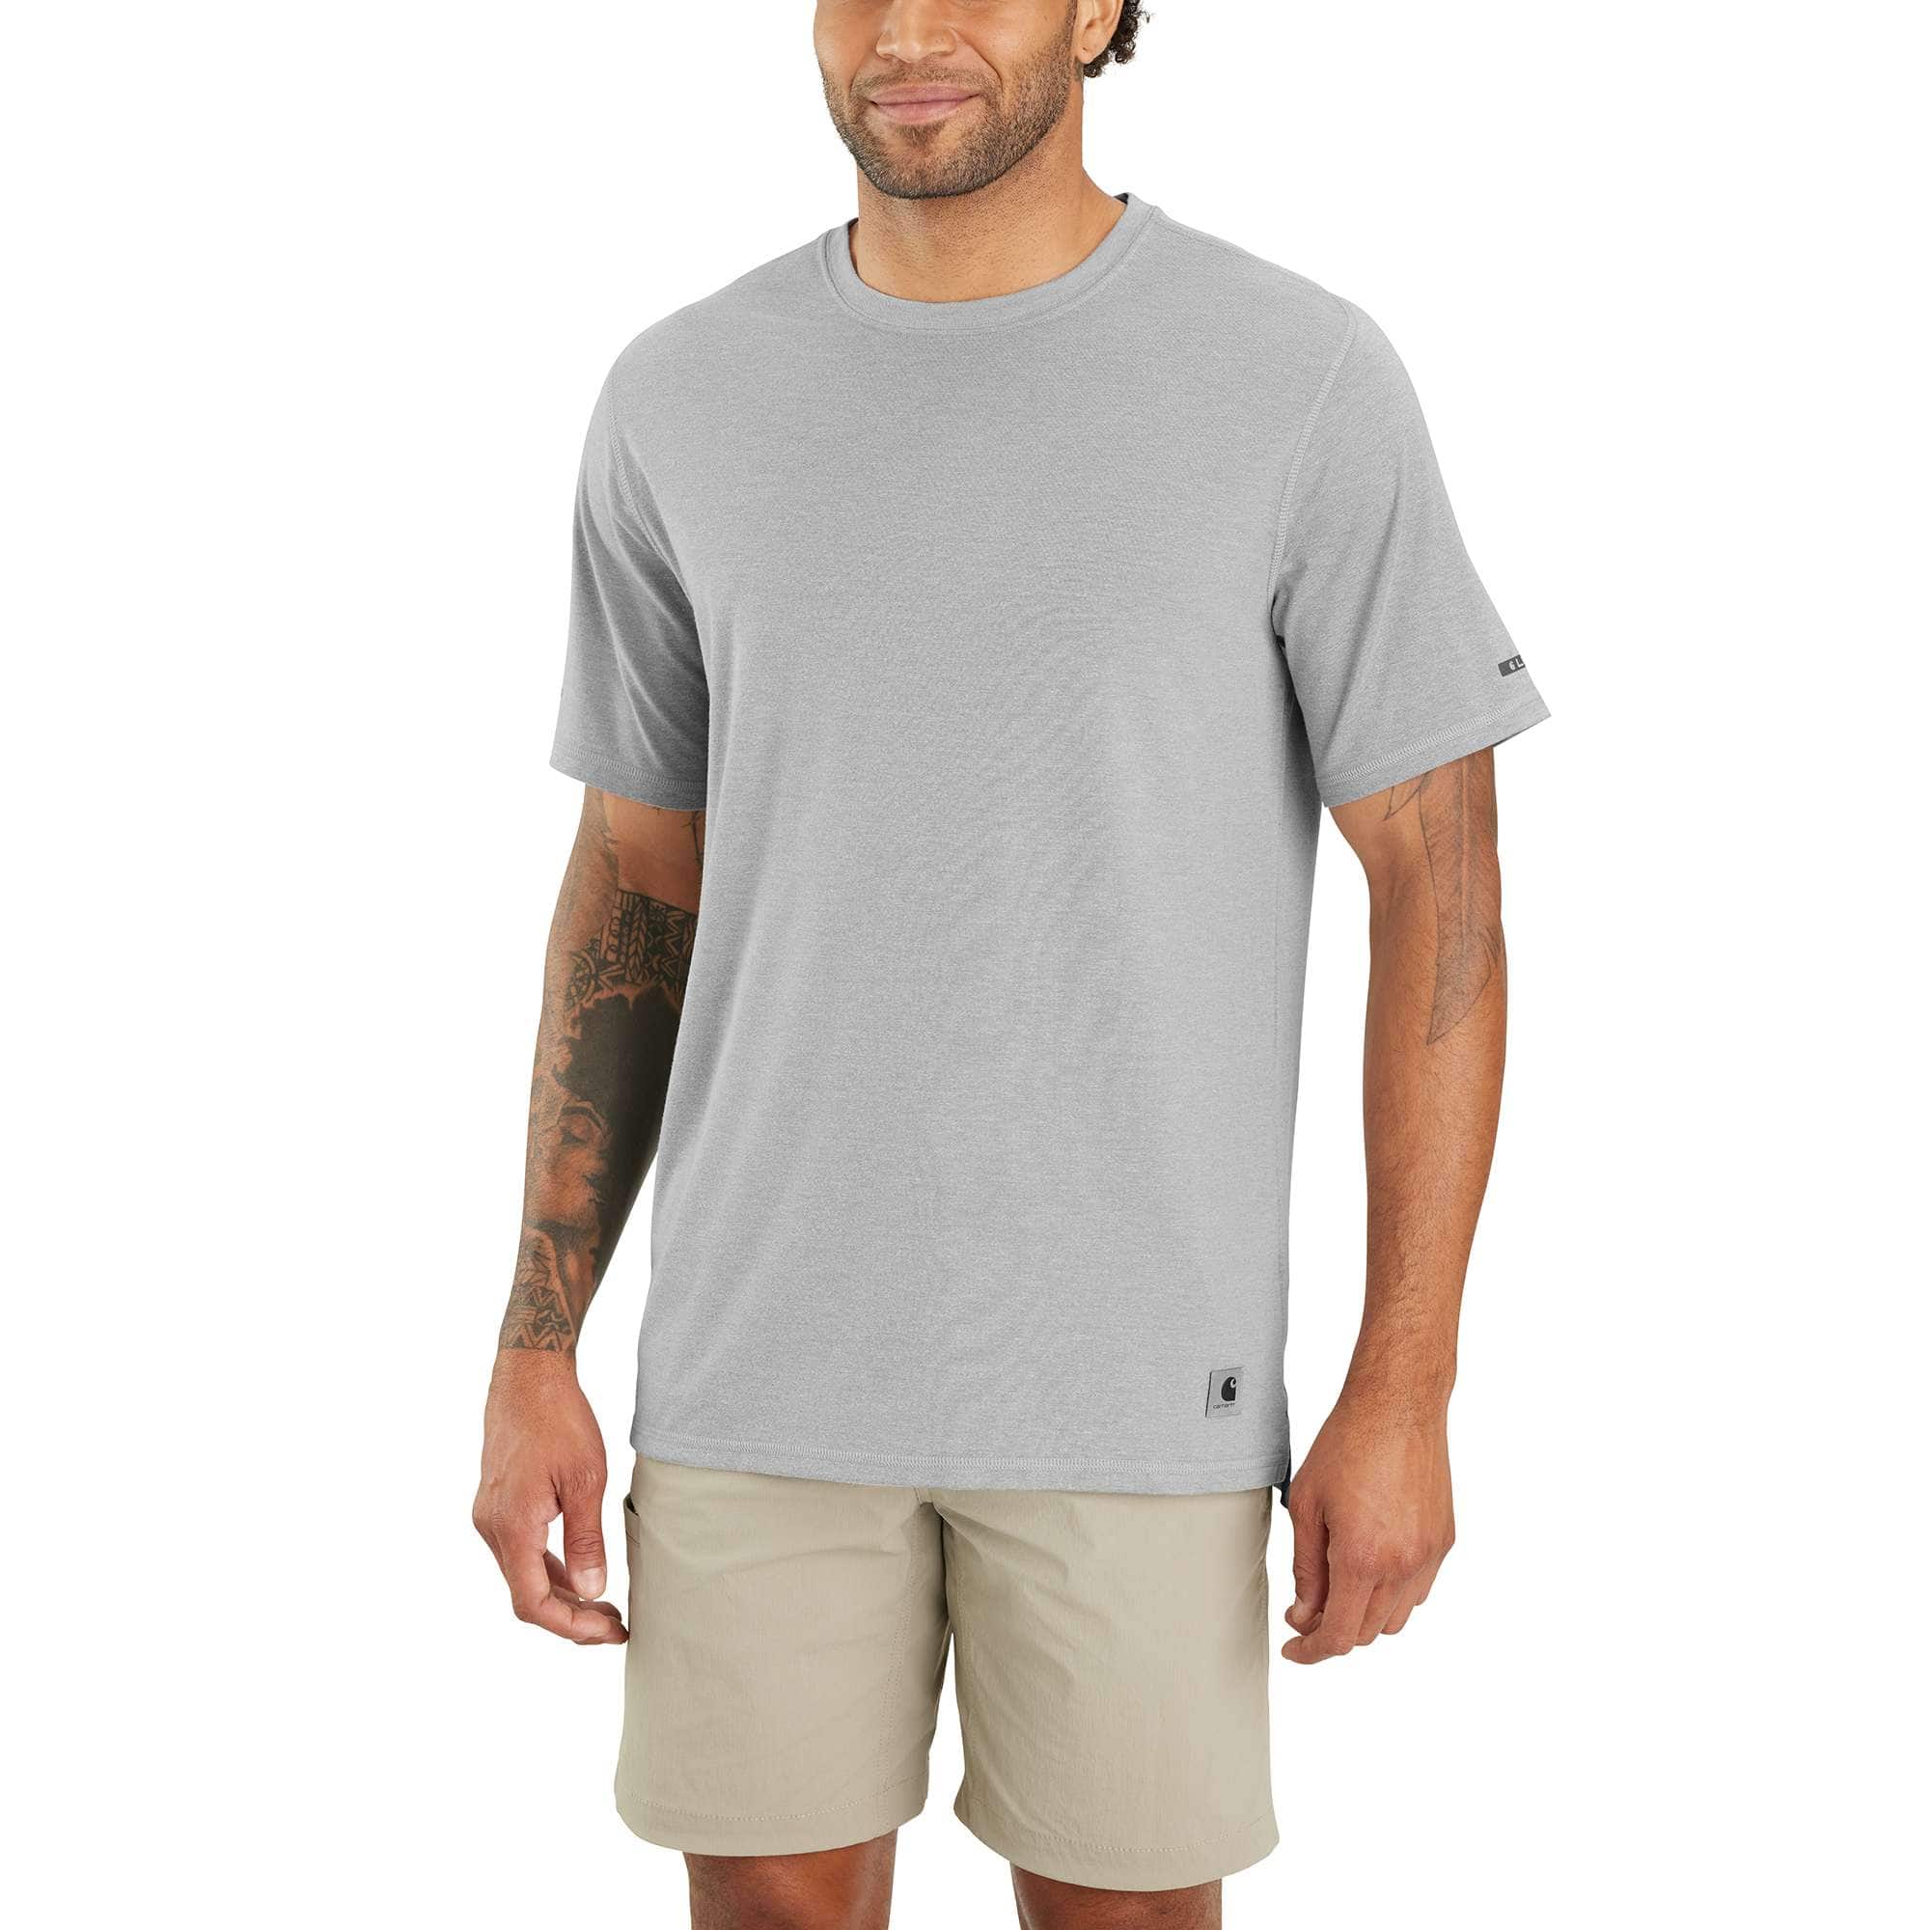 Carhartt Men's Carbon Heather Carhartt Force® Relaxed Fit Short-Sleeve Lightweight T-Shirt